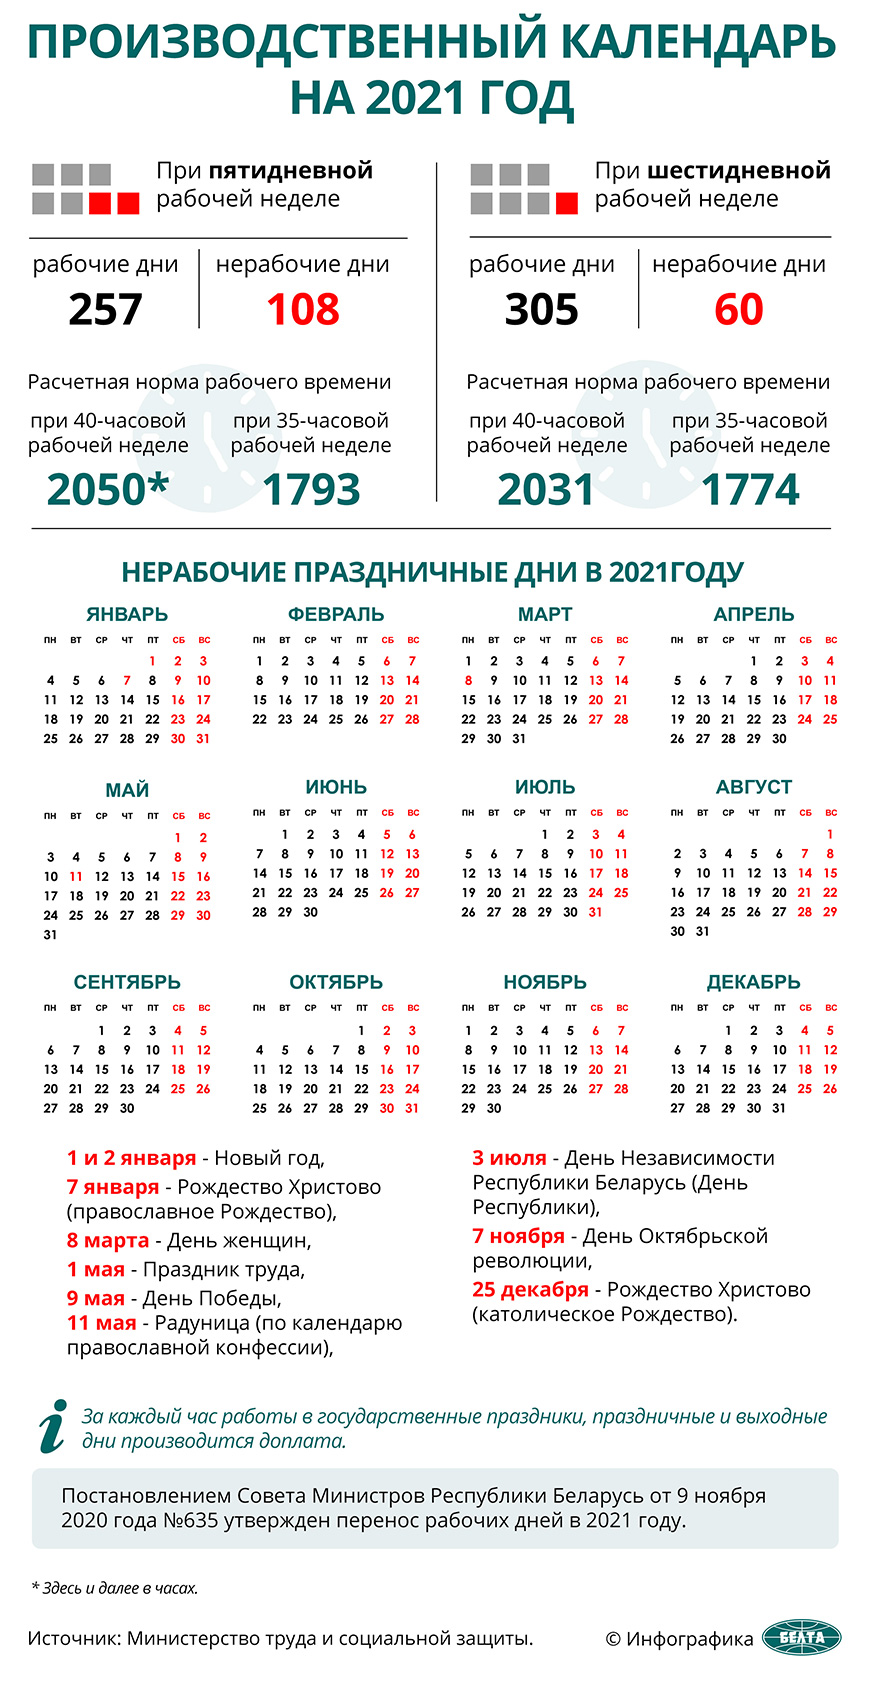 Производственный календарь на 2021 год Бобруйск - Новости - Актуально